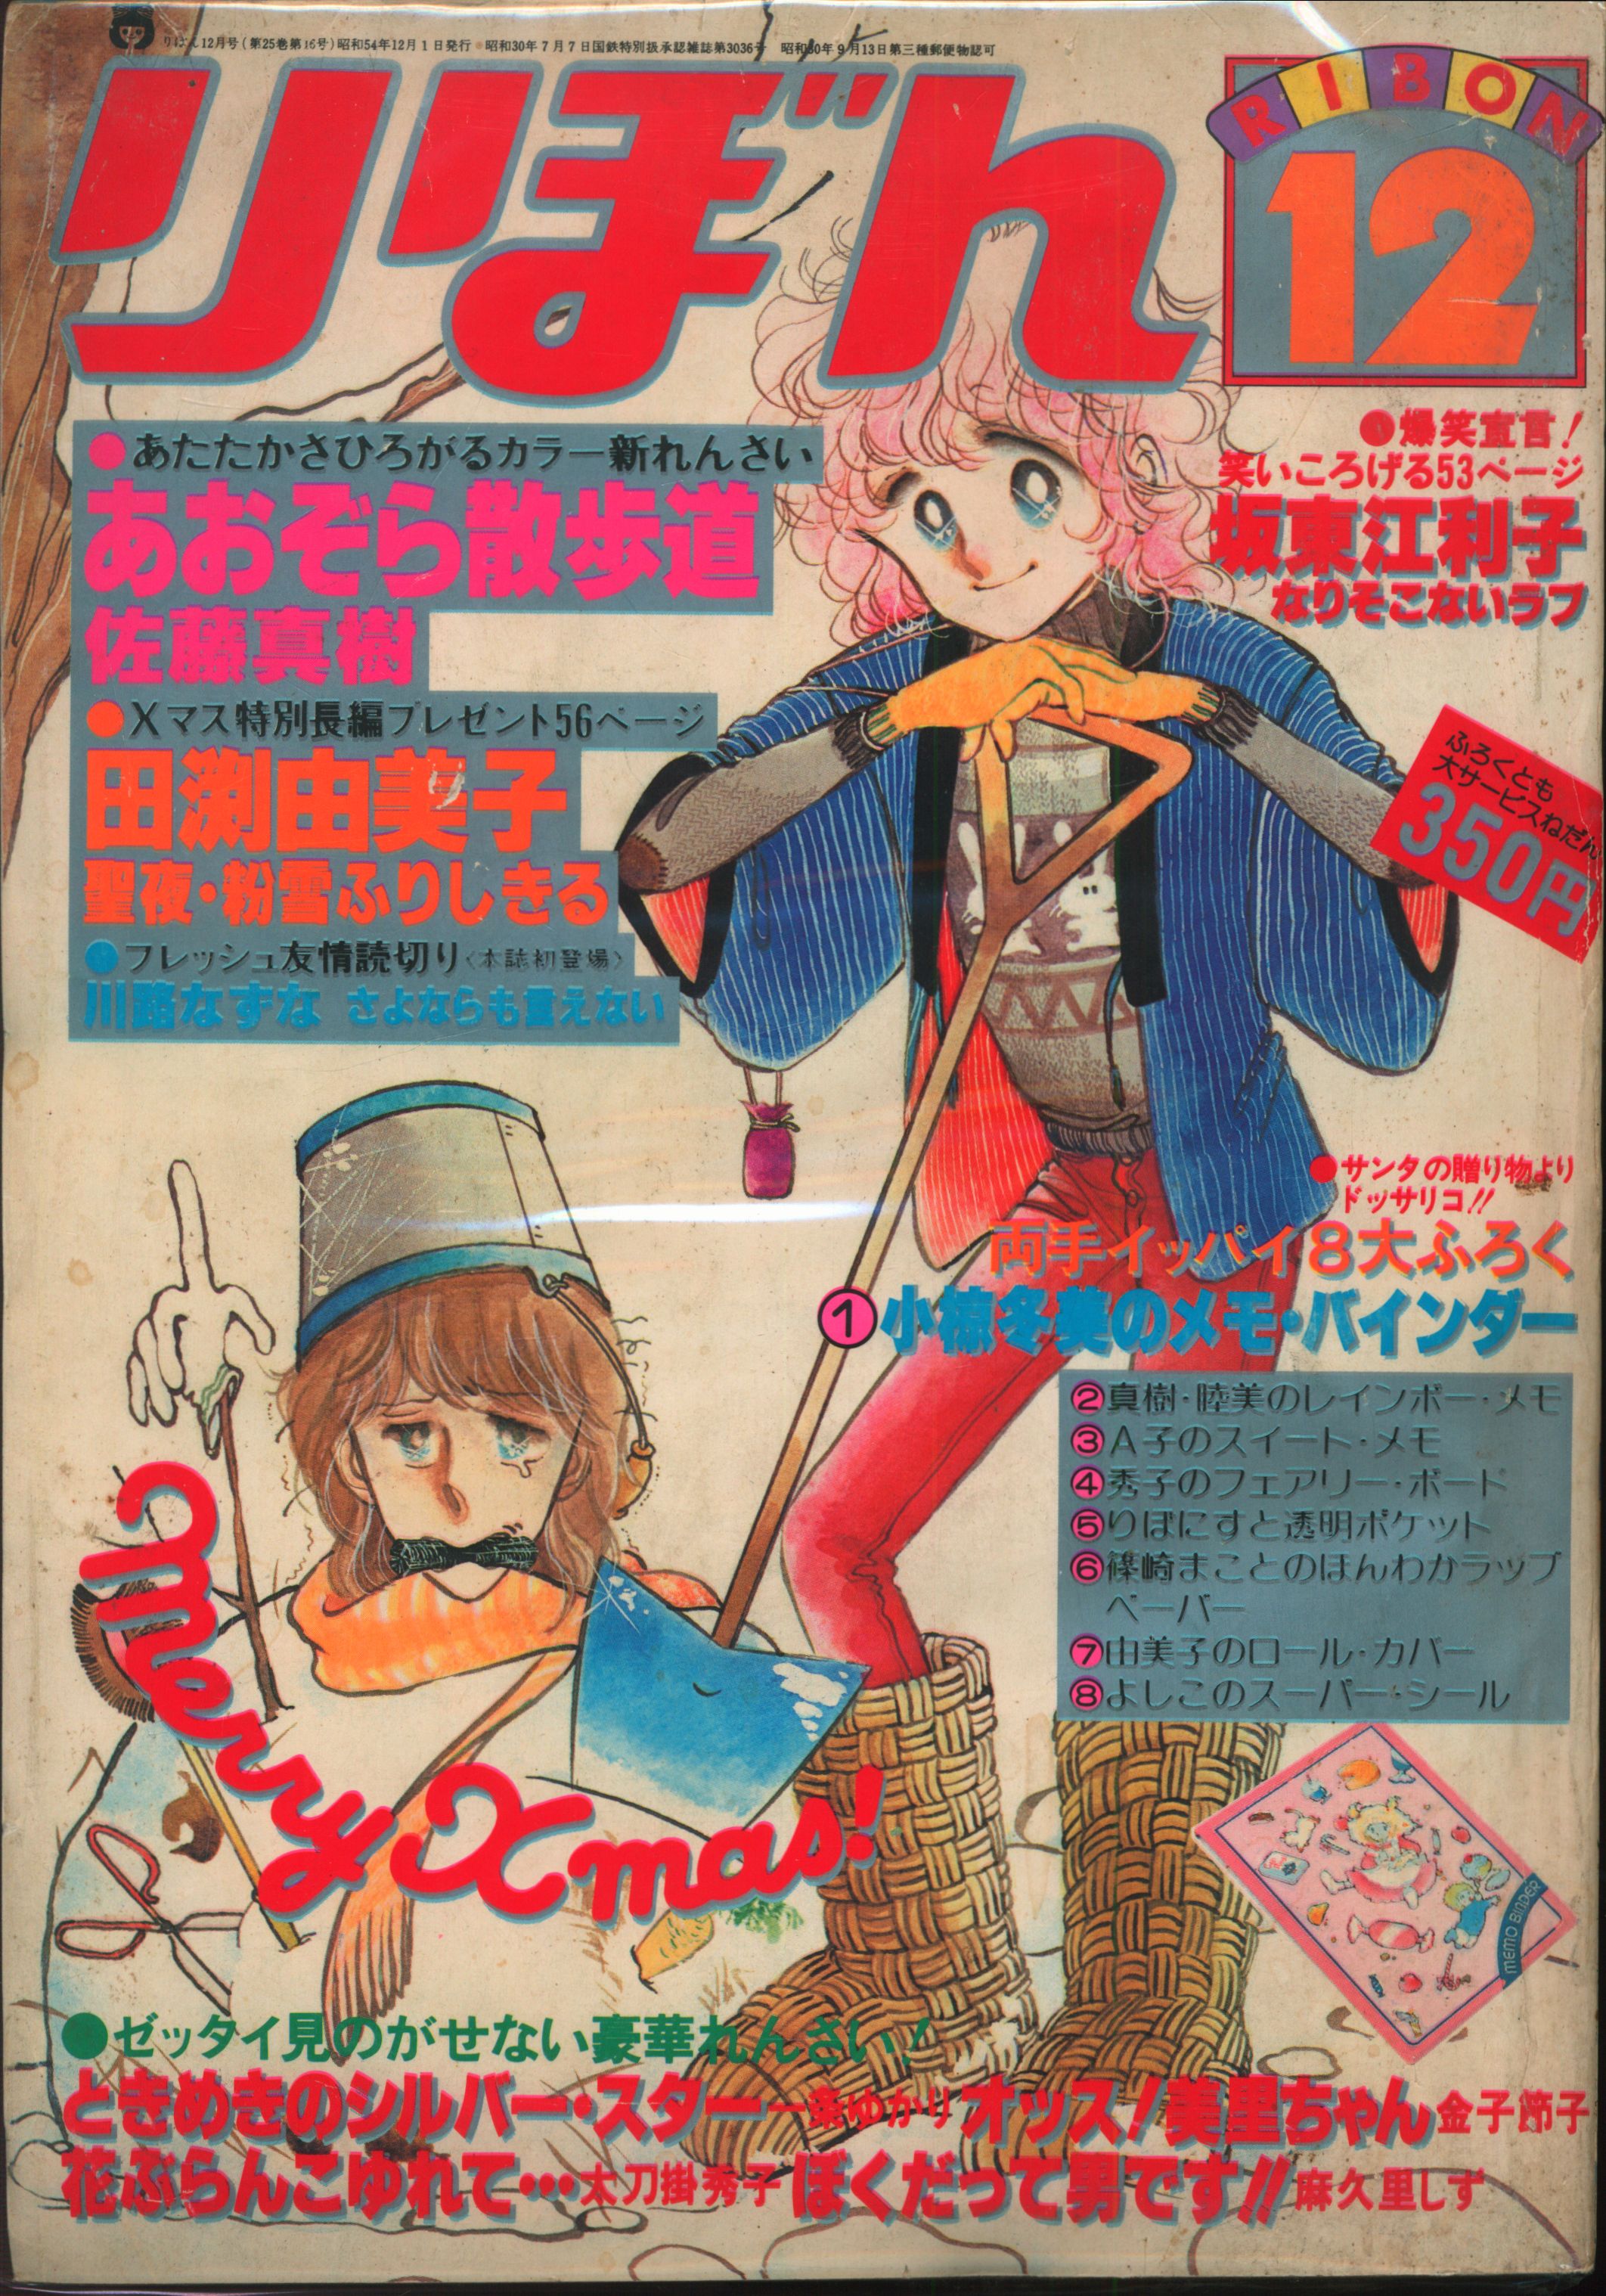 集英社 1979年(昭和54年)の漫画雑誌 りぼん 1979年(昭和54年)12月号